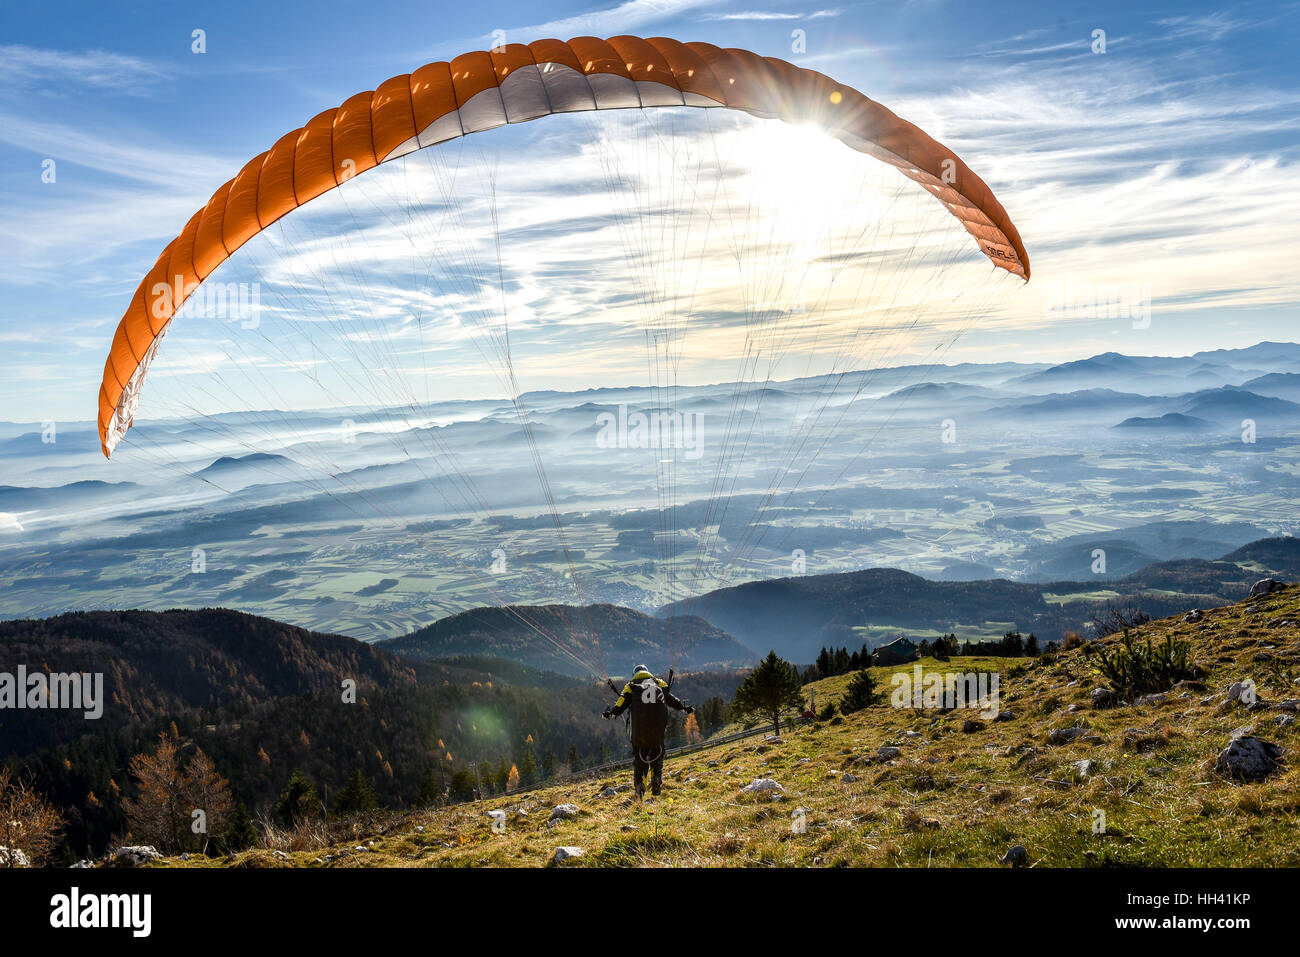 Gleitschirm hat begonnen. Fallschirm füllt sich mit Luft in den Bergen  Alpen Ona sonnigen Tag Stockfotografie - Alamy